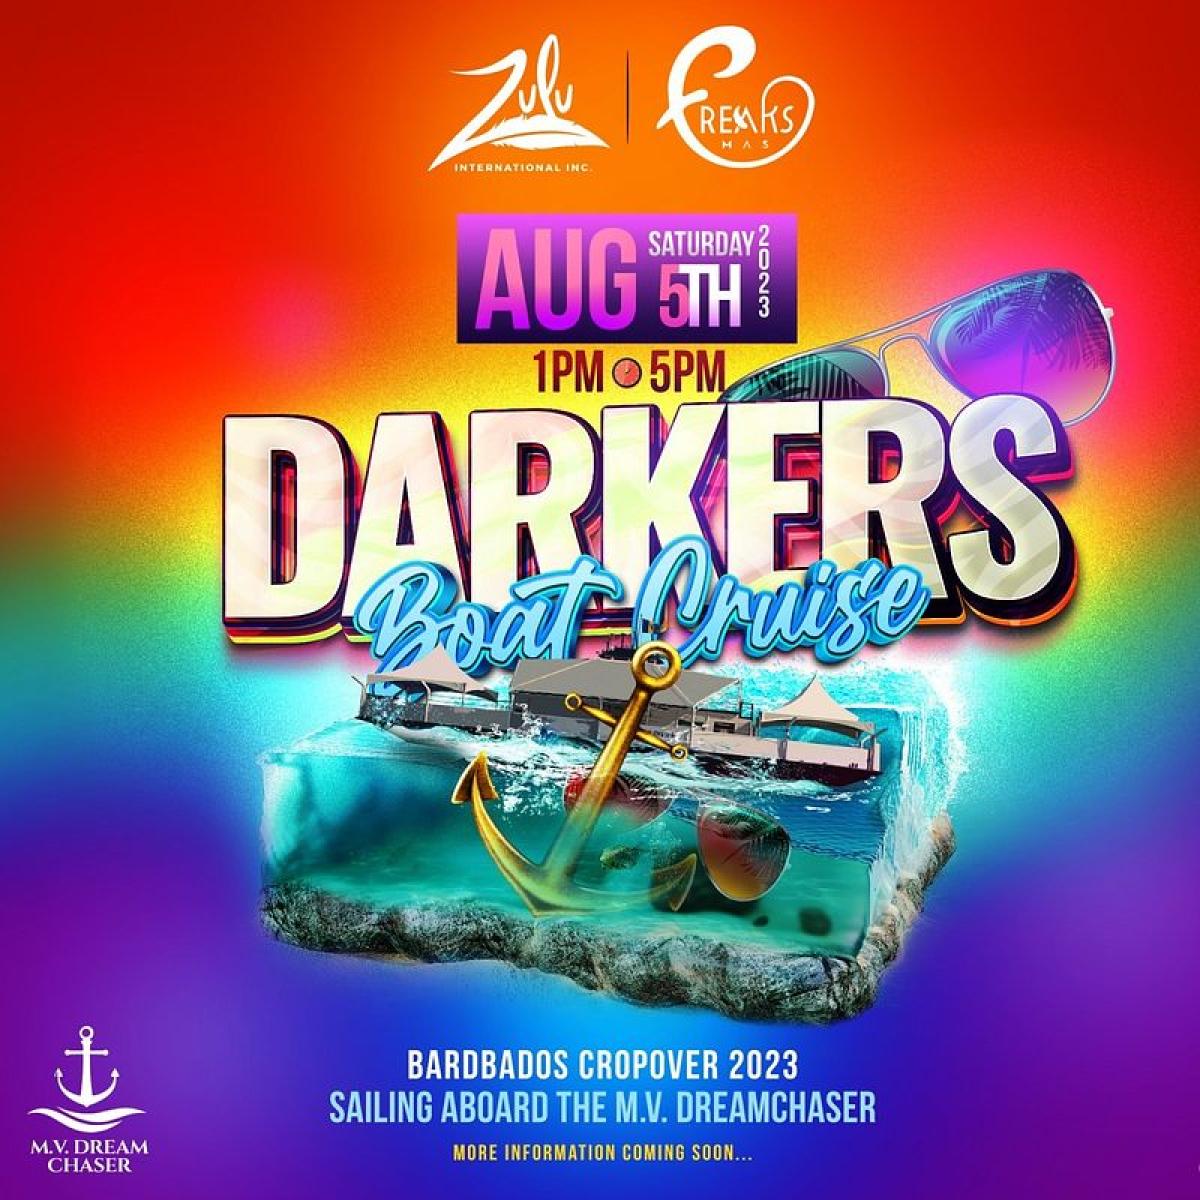 Darkerz Boat Cruise flyer or graphic.